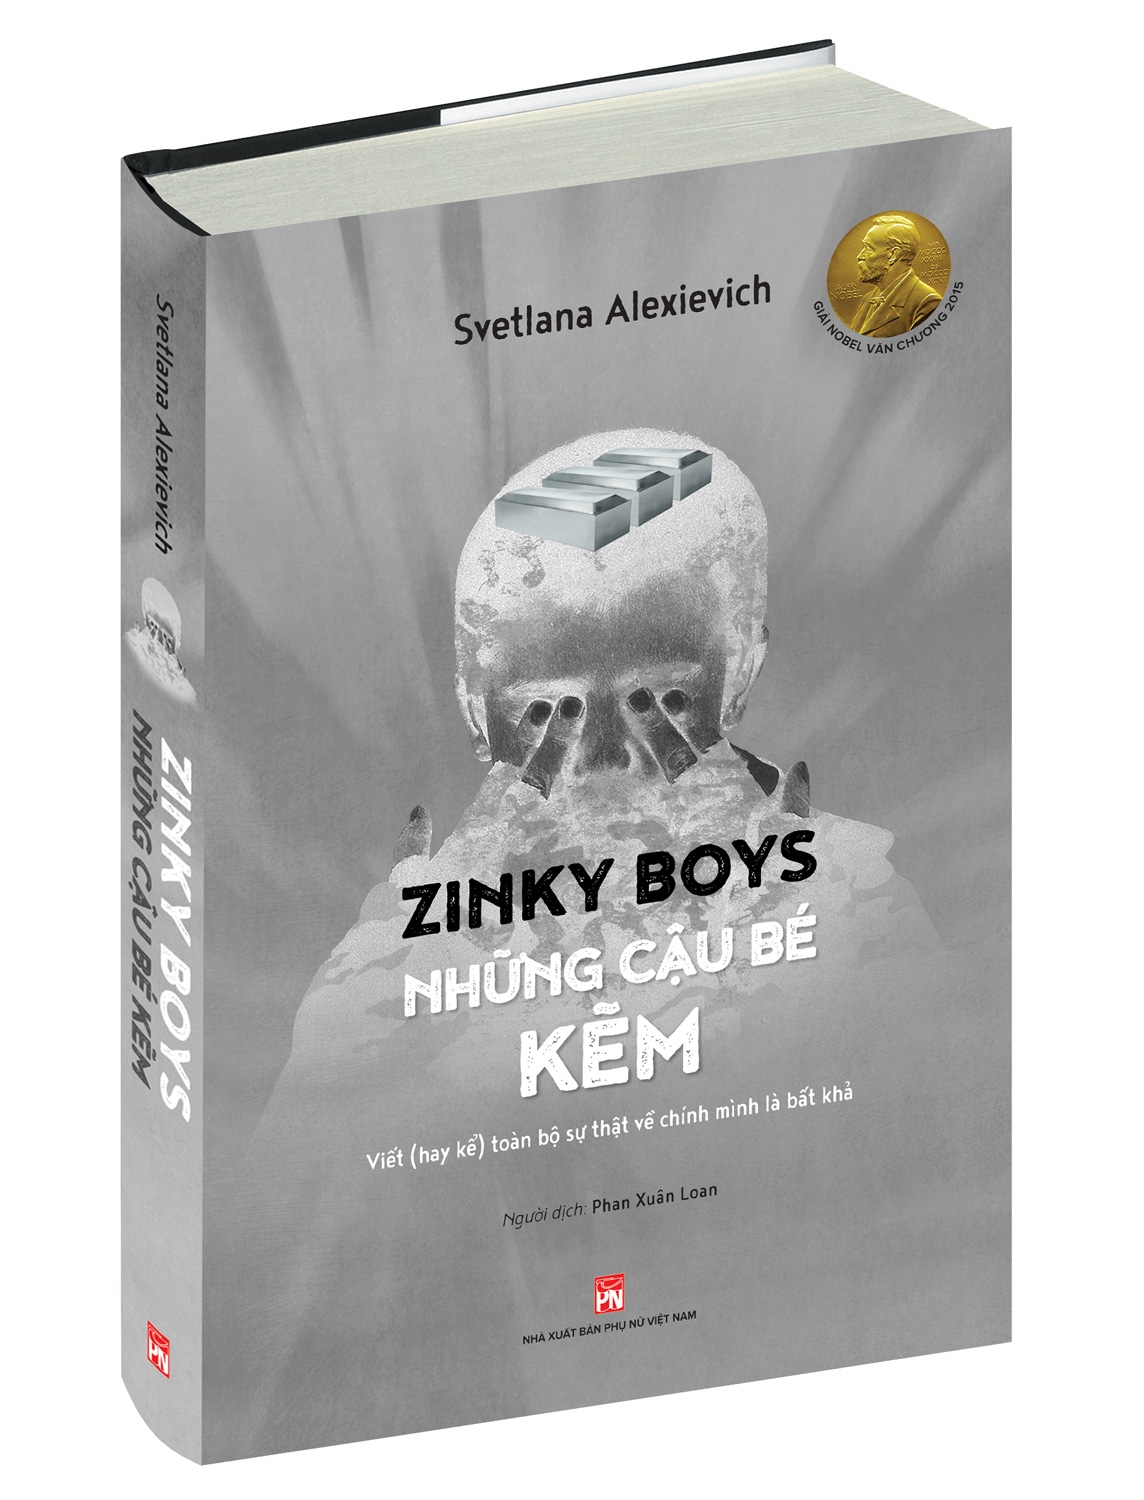 Zinky Boys Những Cậu Bé Kẽm - Viết Hay Kể Toàn Bộ Sự Thật Về Chính Mình Là Bất Khả PDF